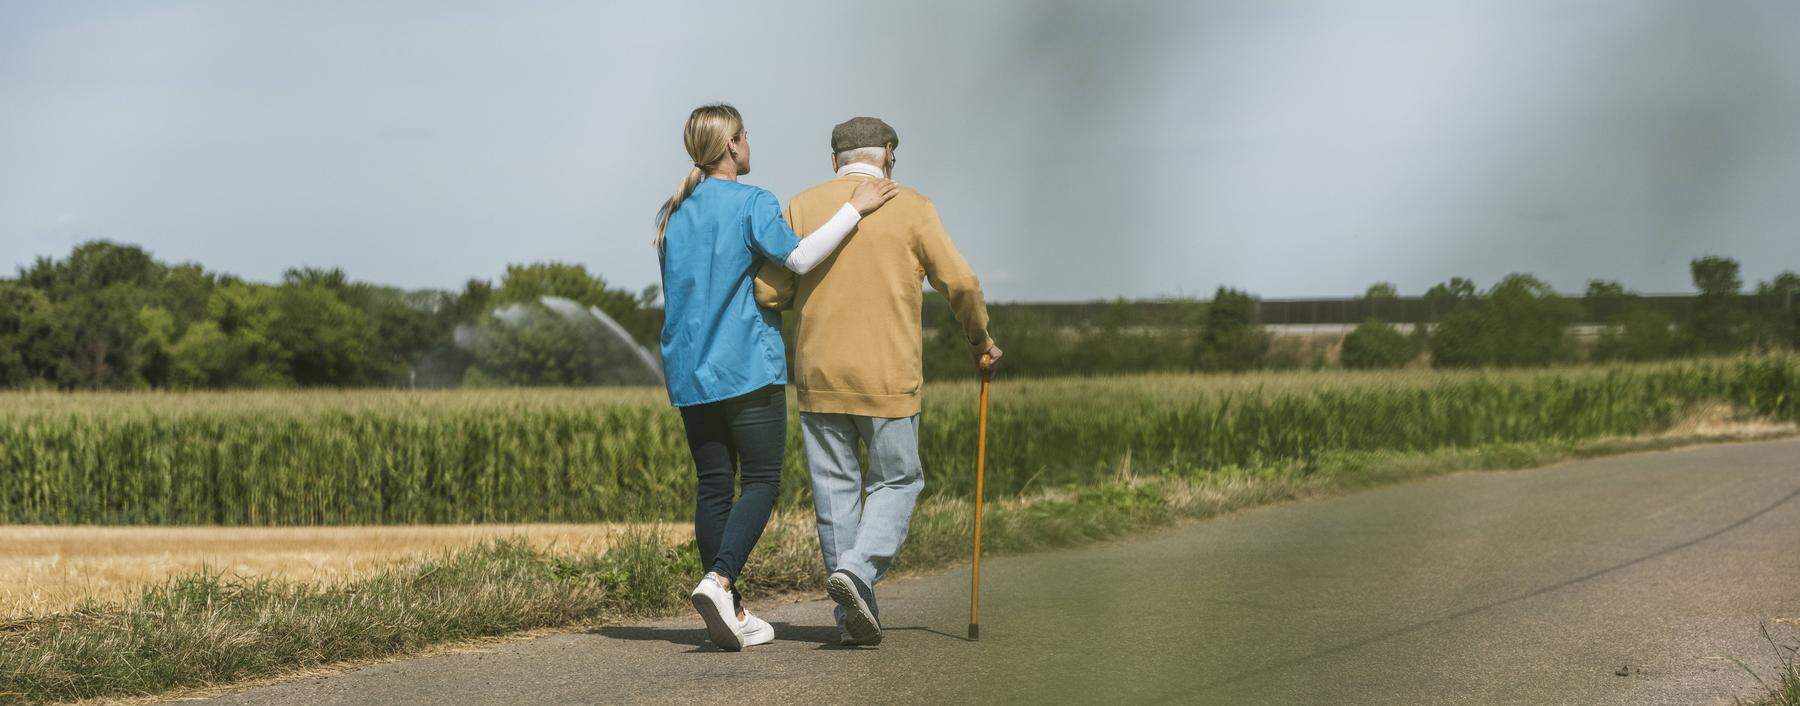 Altenpflege wird immer wichtiger in einer alternden Gesellschaft. Was wäre eine angemessene Entlohnung?